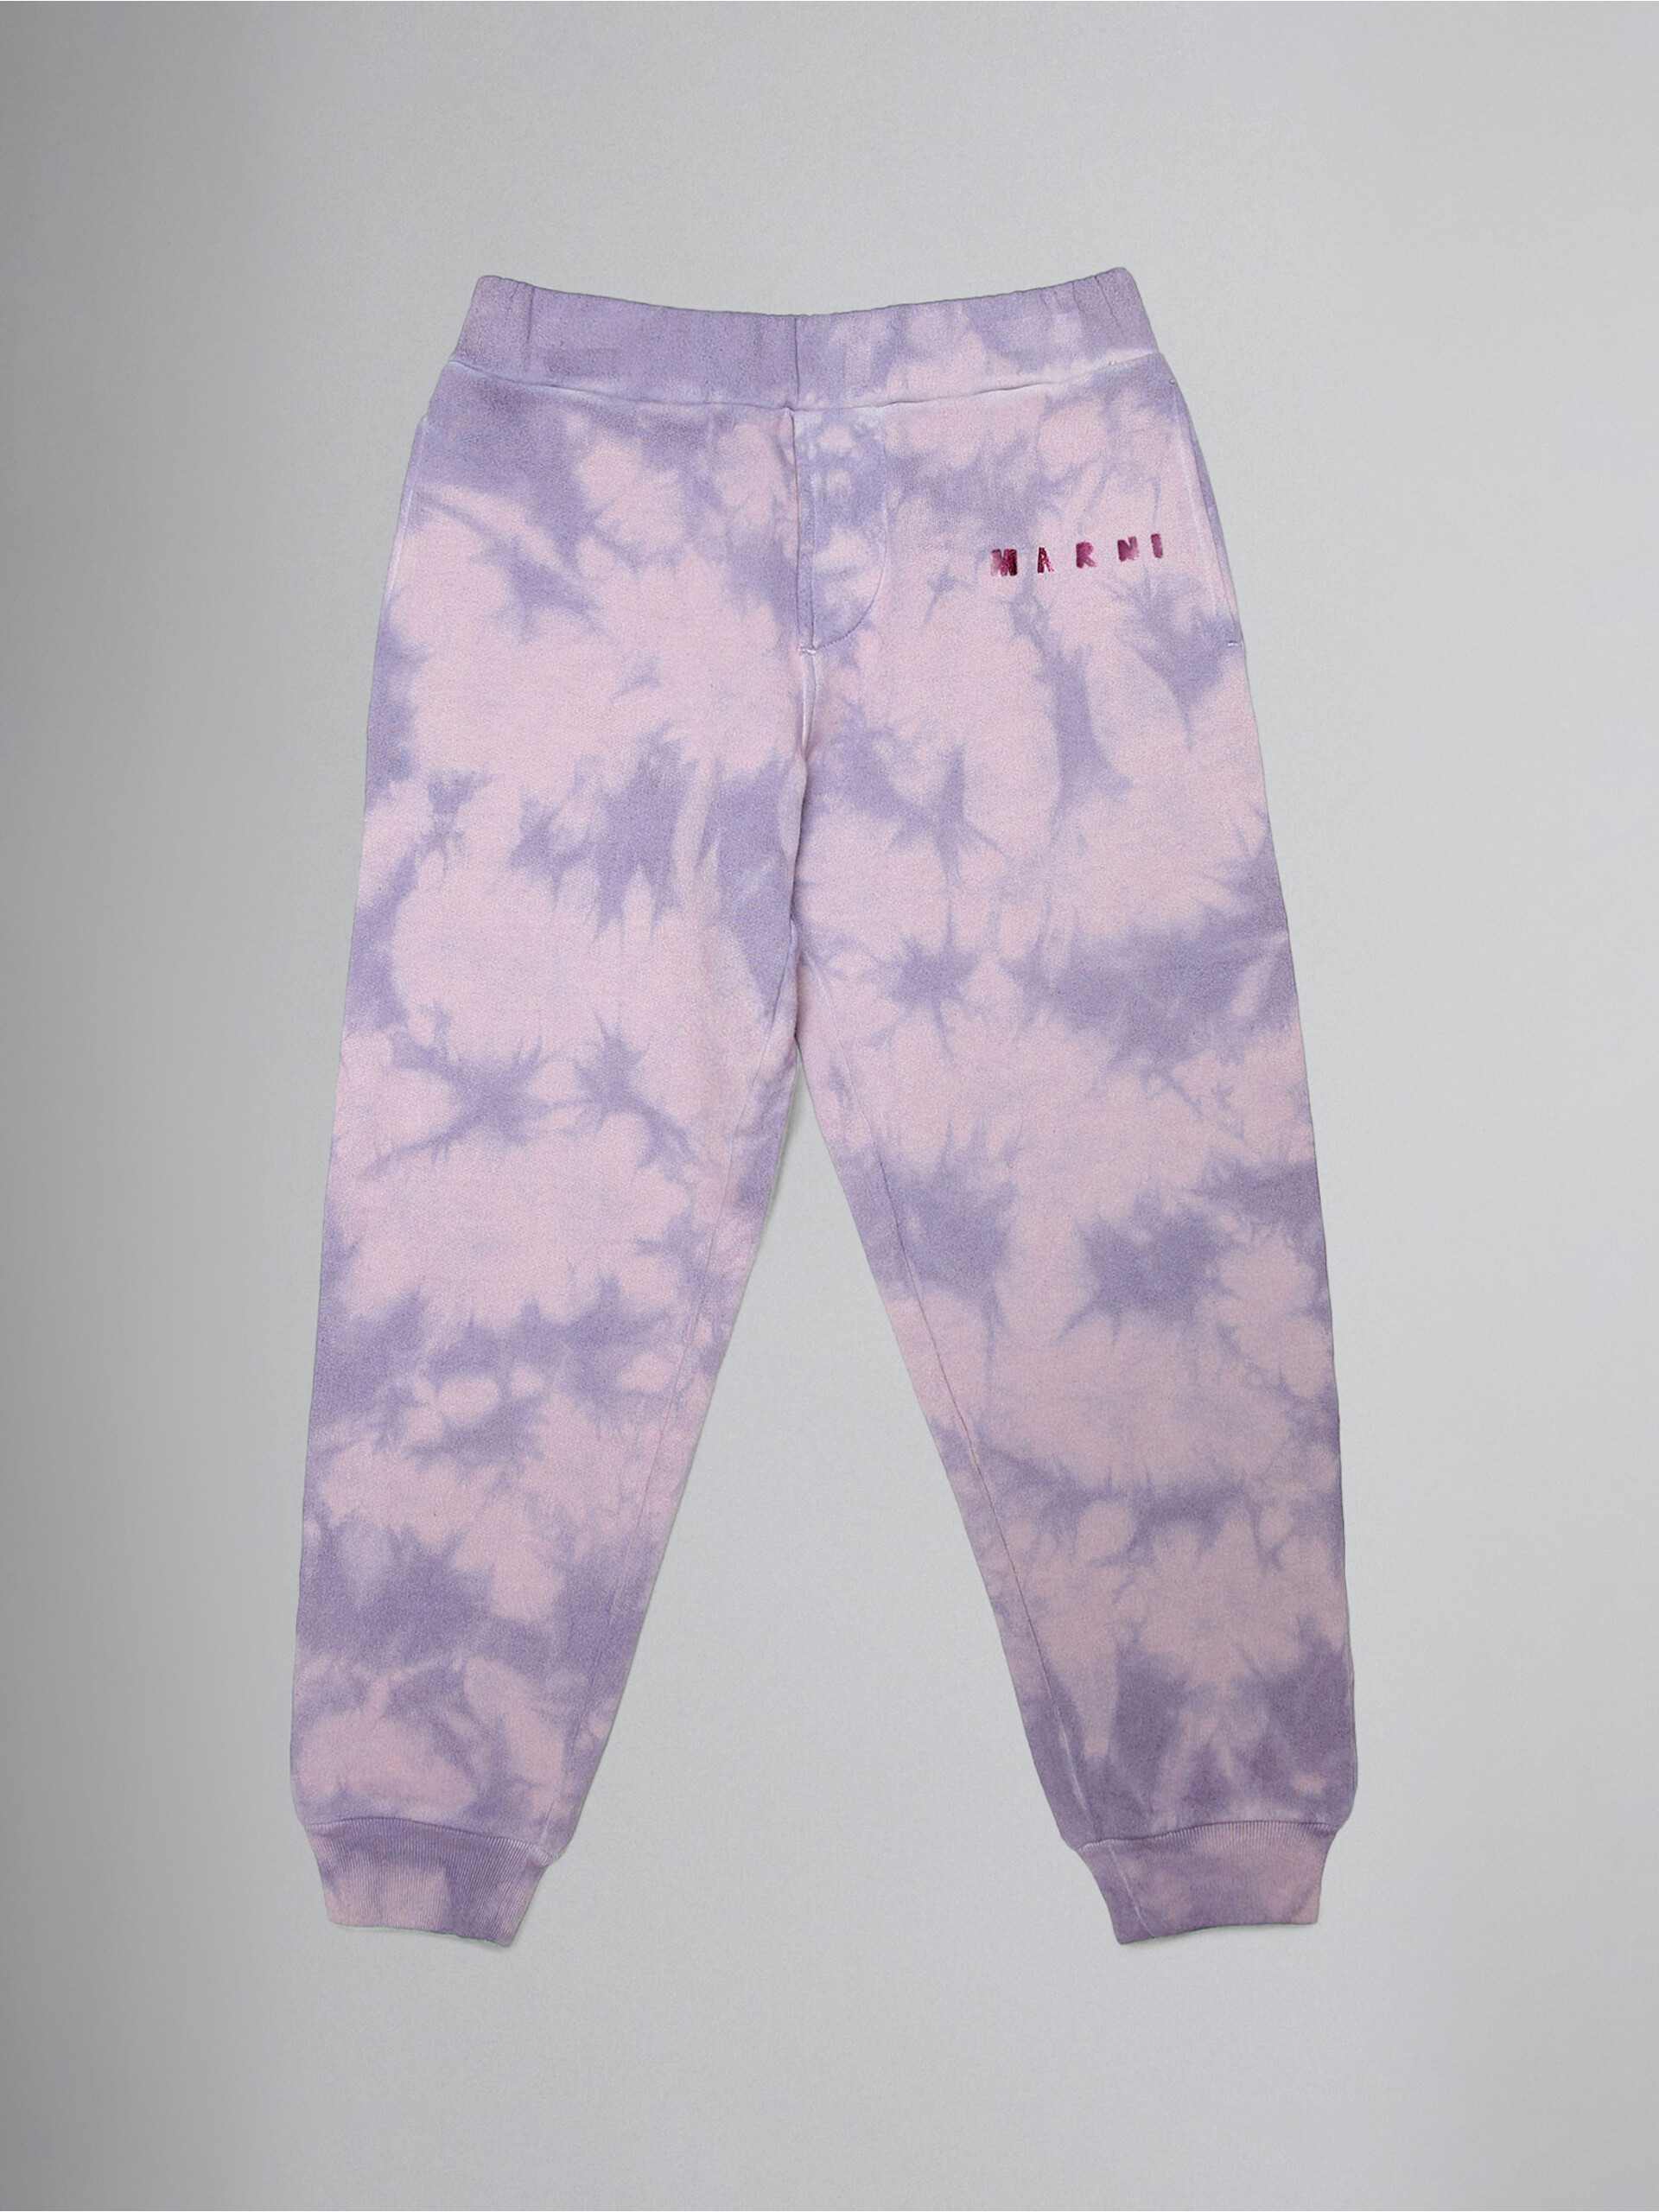 Lavender tie-dye track pants with metallic logo prints - Pants - Image 1